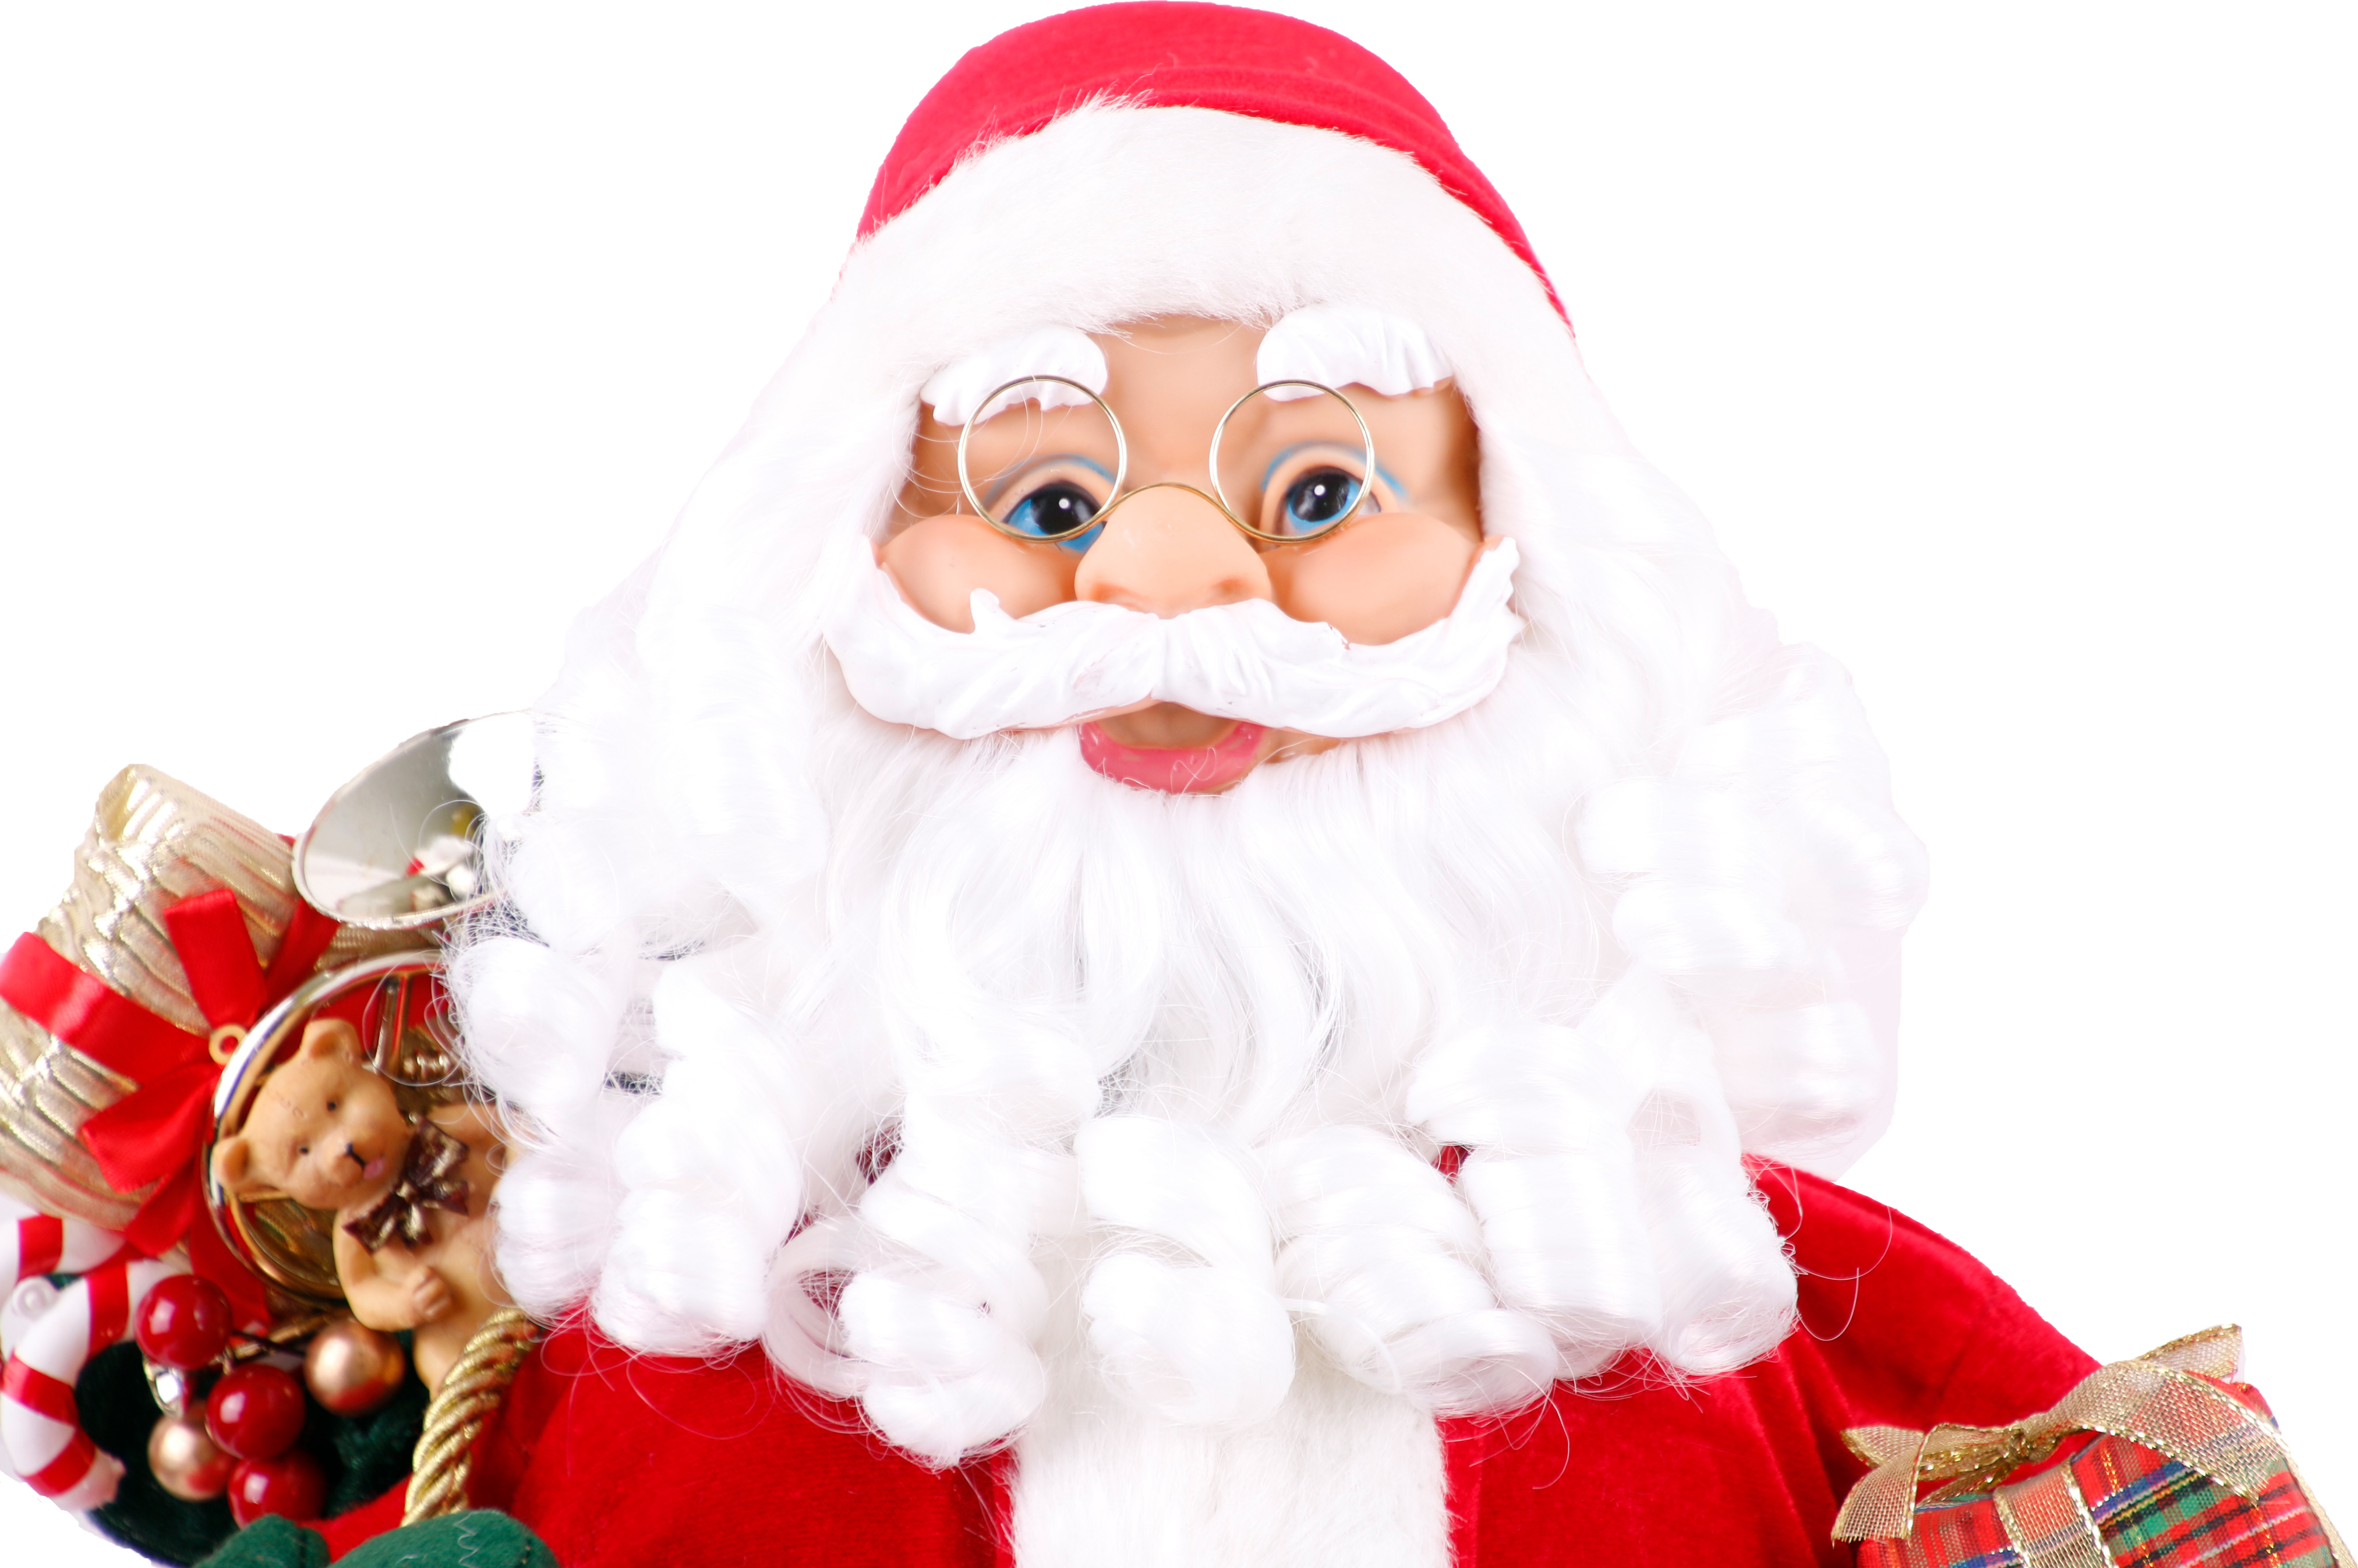 Weihnachtsmann Dekofigur mit Geschenken und Handschuhe